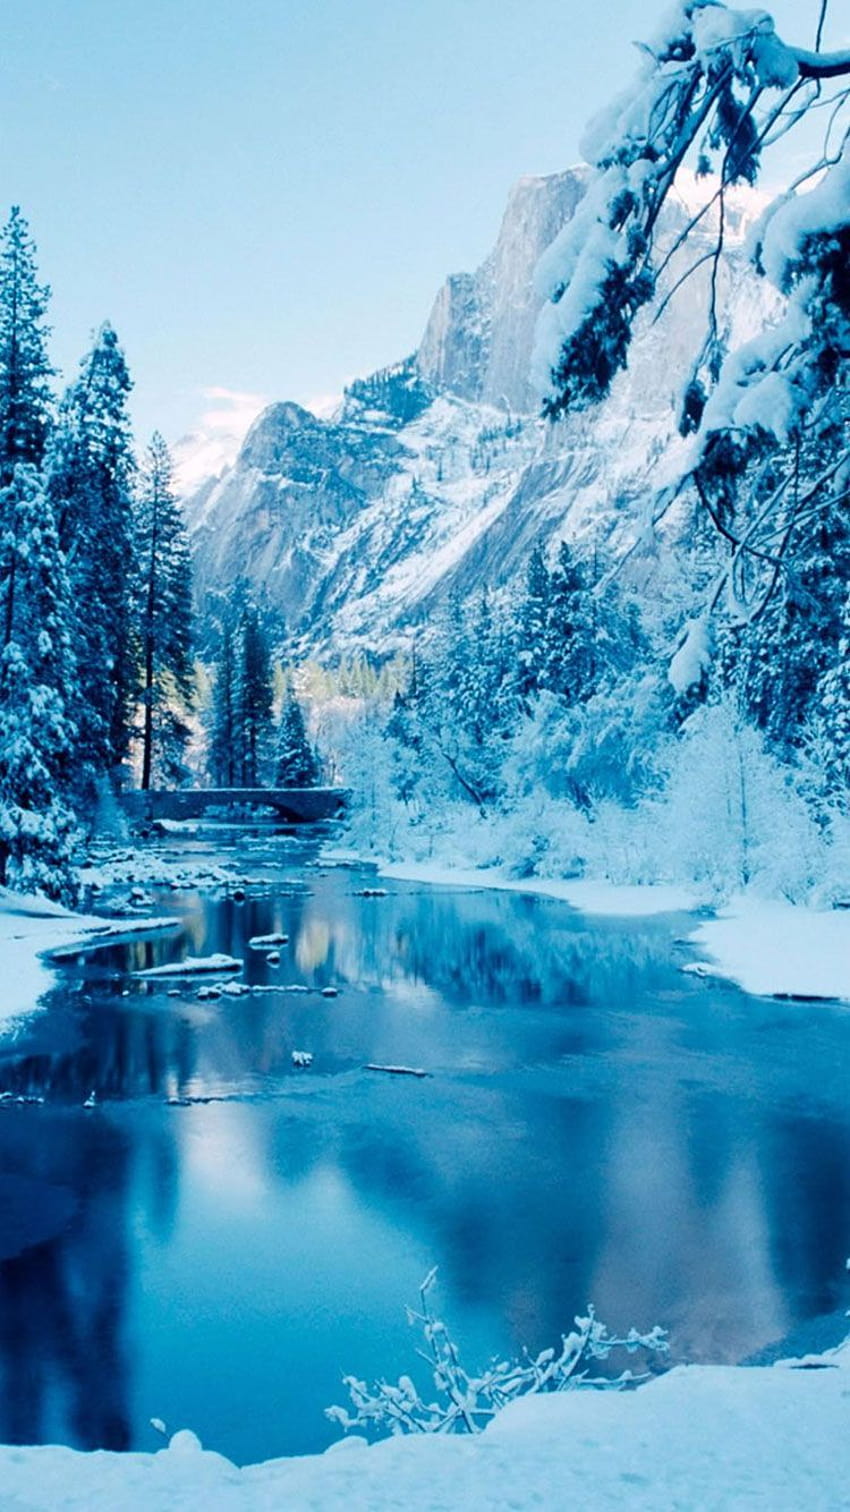 Hình nền iPhone XR mang phong cách đông đá, tuyết rơi thật đẹp mắt và đem lại cảm giác đầy ấm áp trong mùa đông lạnh giá. Hãy cùng ngắm nhìn những hình ảnh tuyệt vời này.